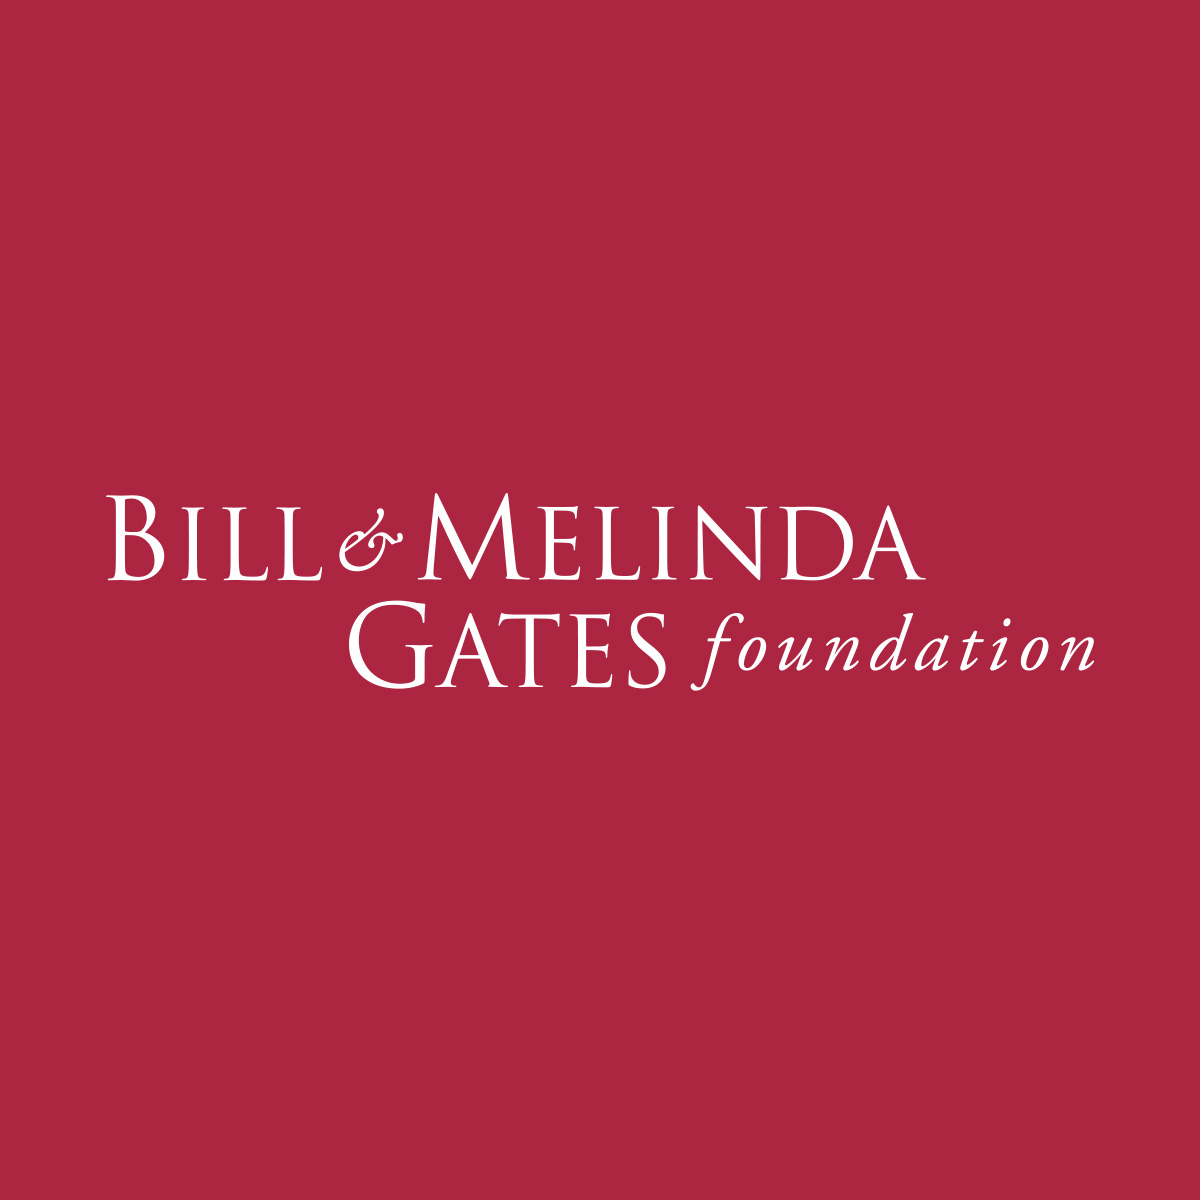 盖茨基金会<font color="red">支持</font>抗艾滋病毒和疟疾研究